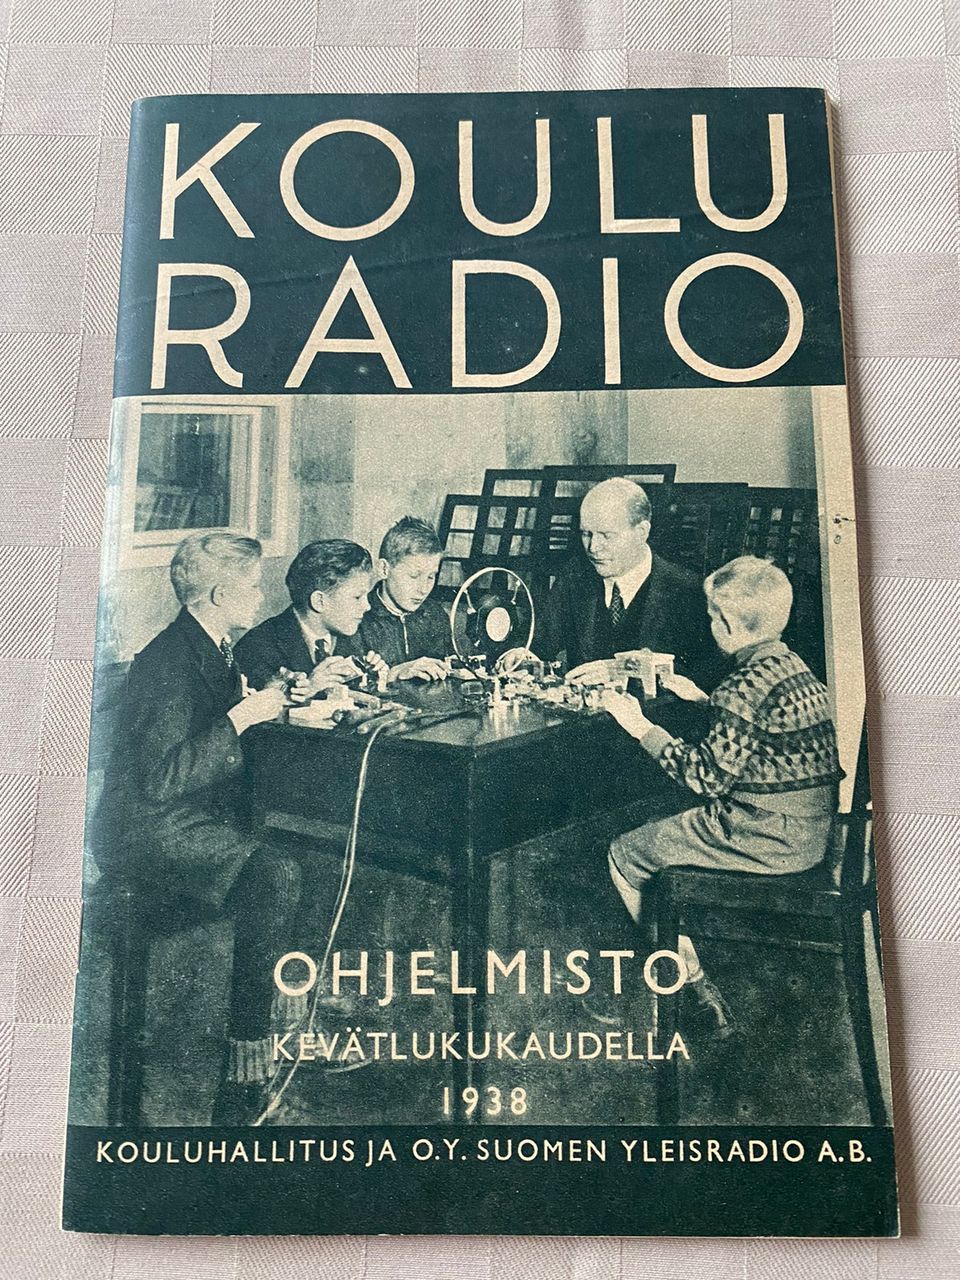 Kouluradio-lehti OHJELMISTOA KEVÄTLUKUKAUDELLA 1938